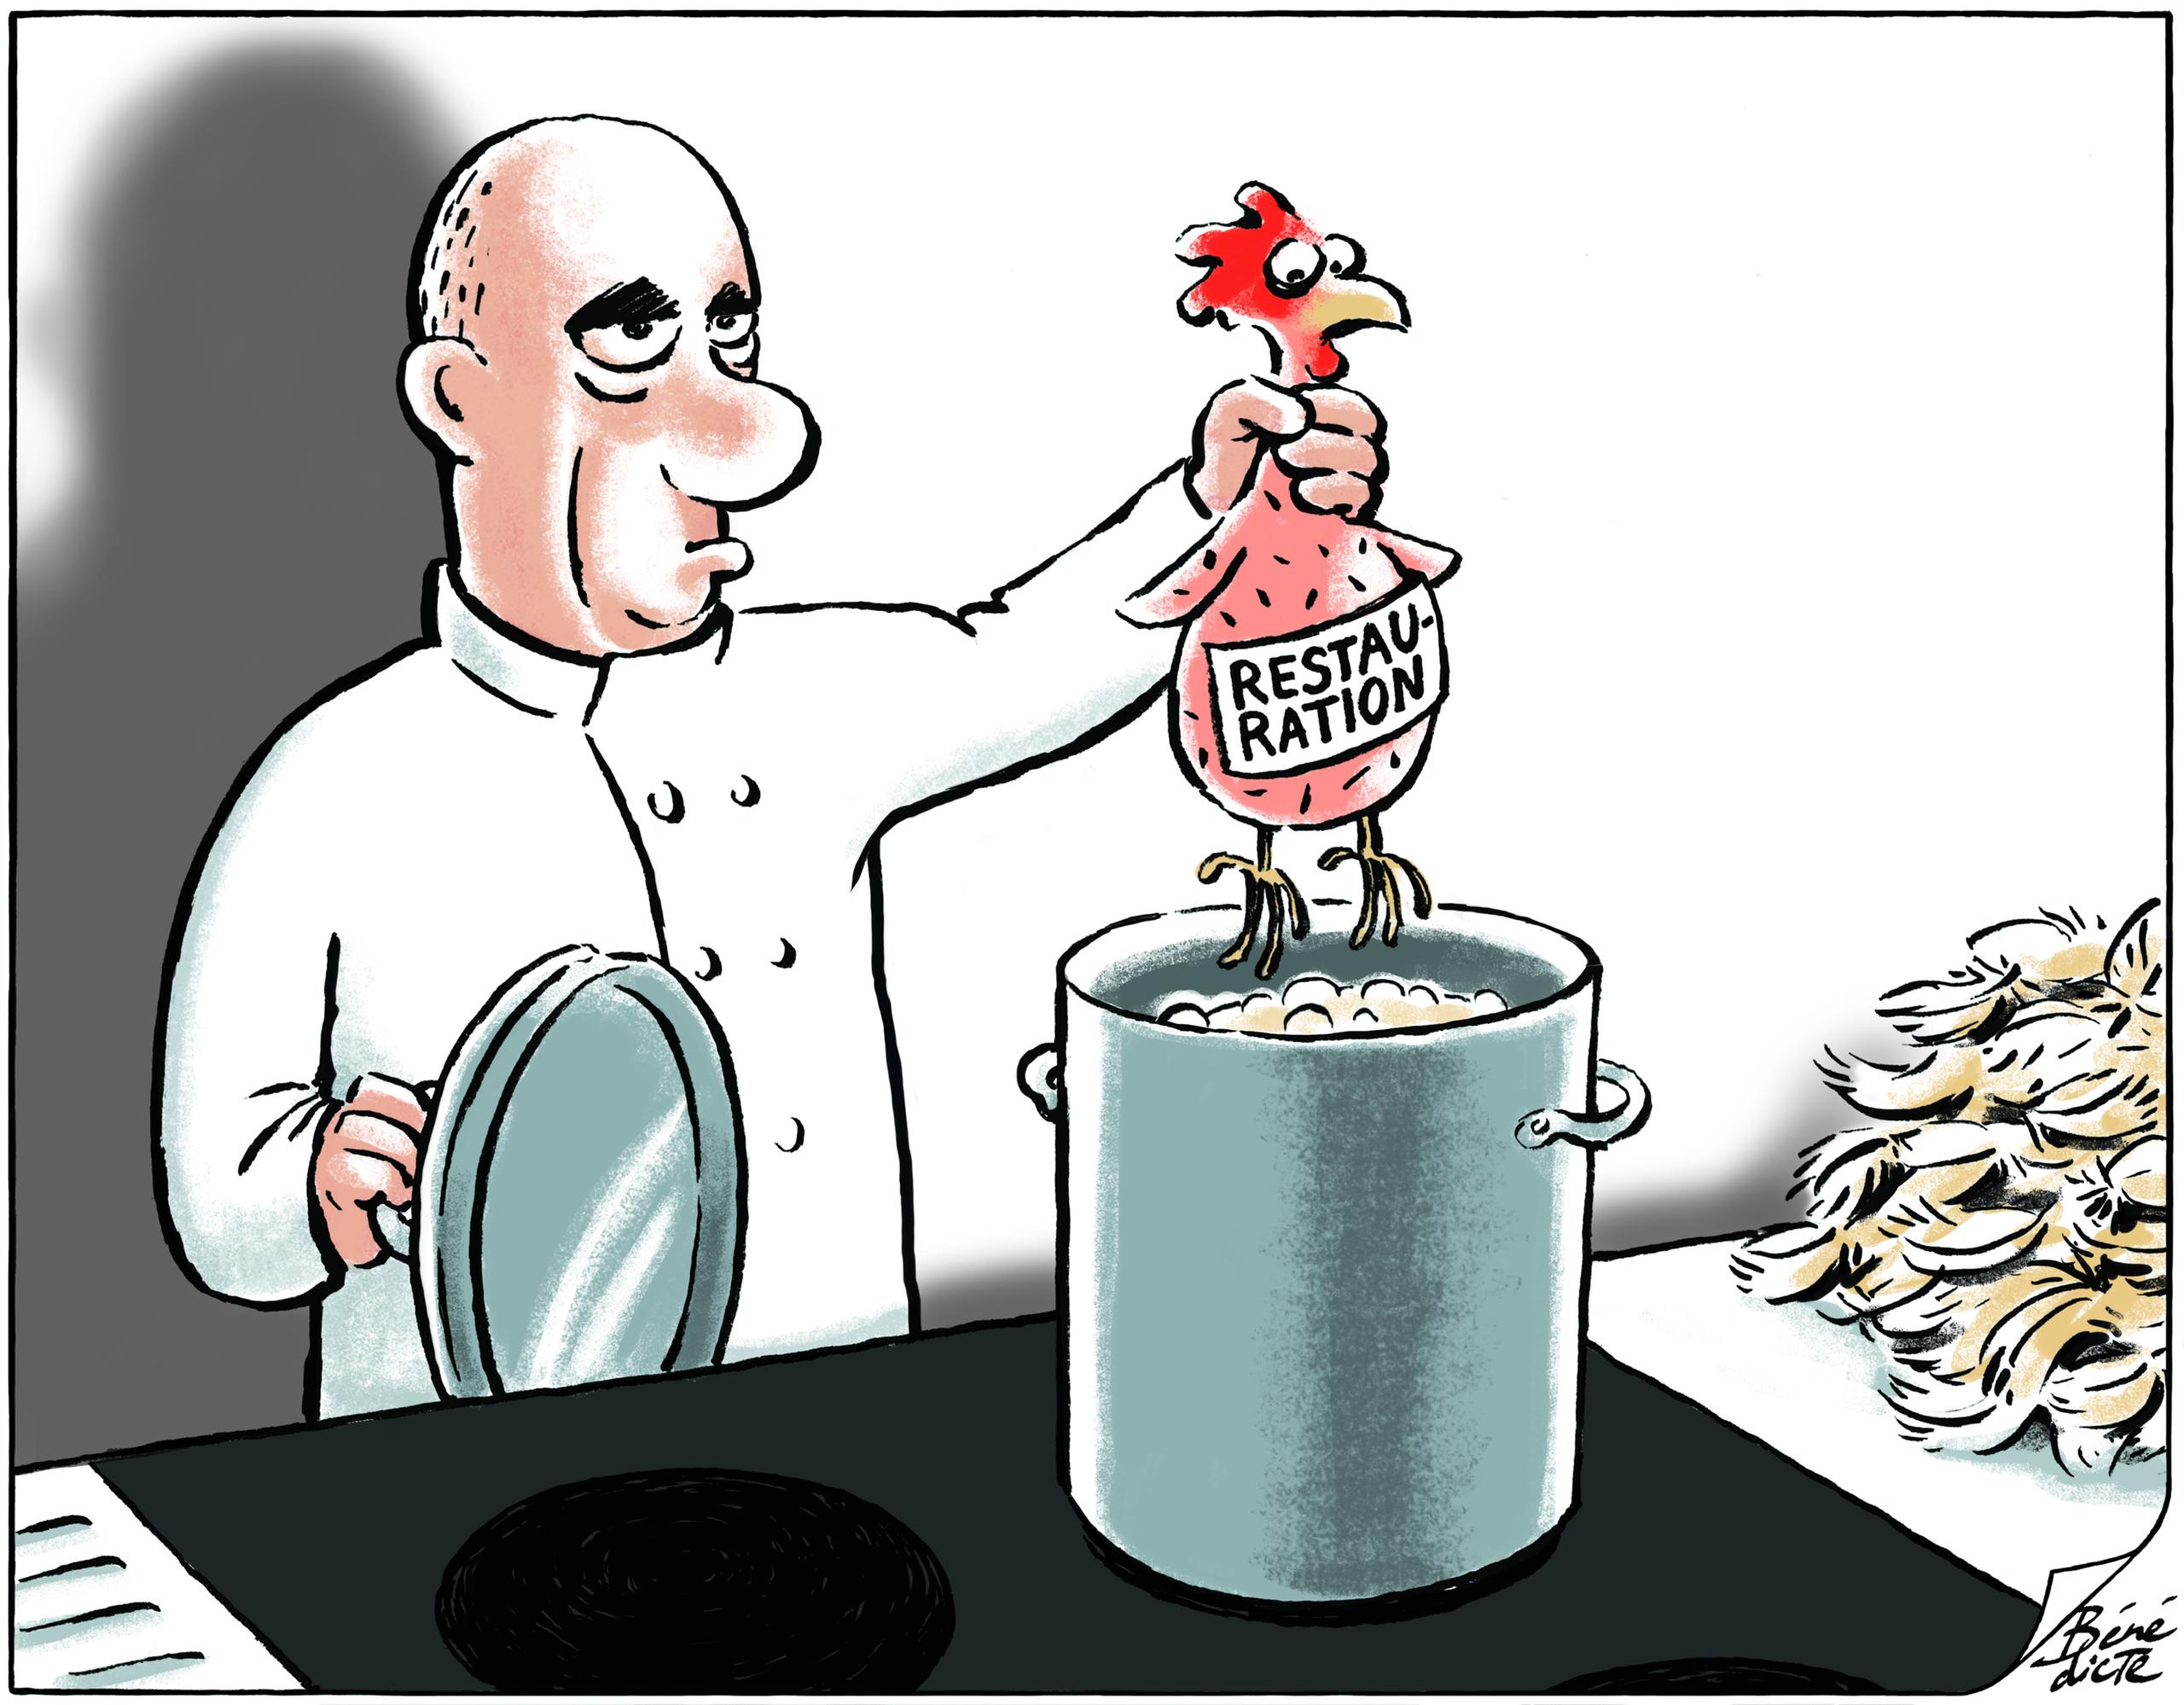 Berset sumerge el pollo en una olla